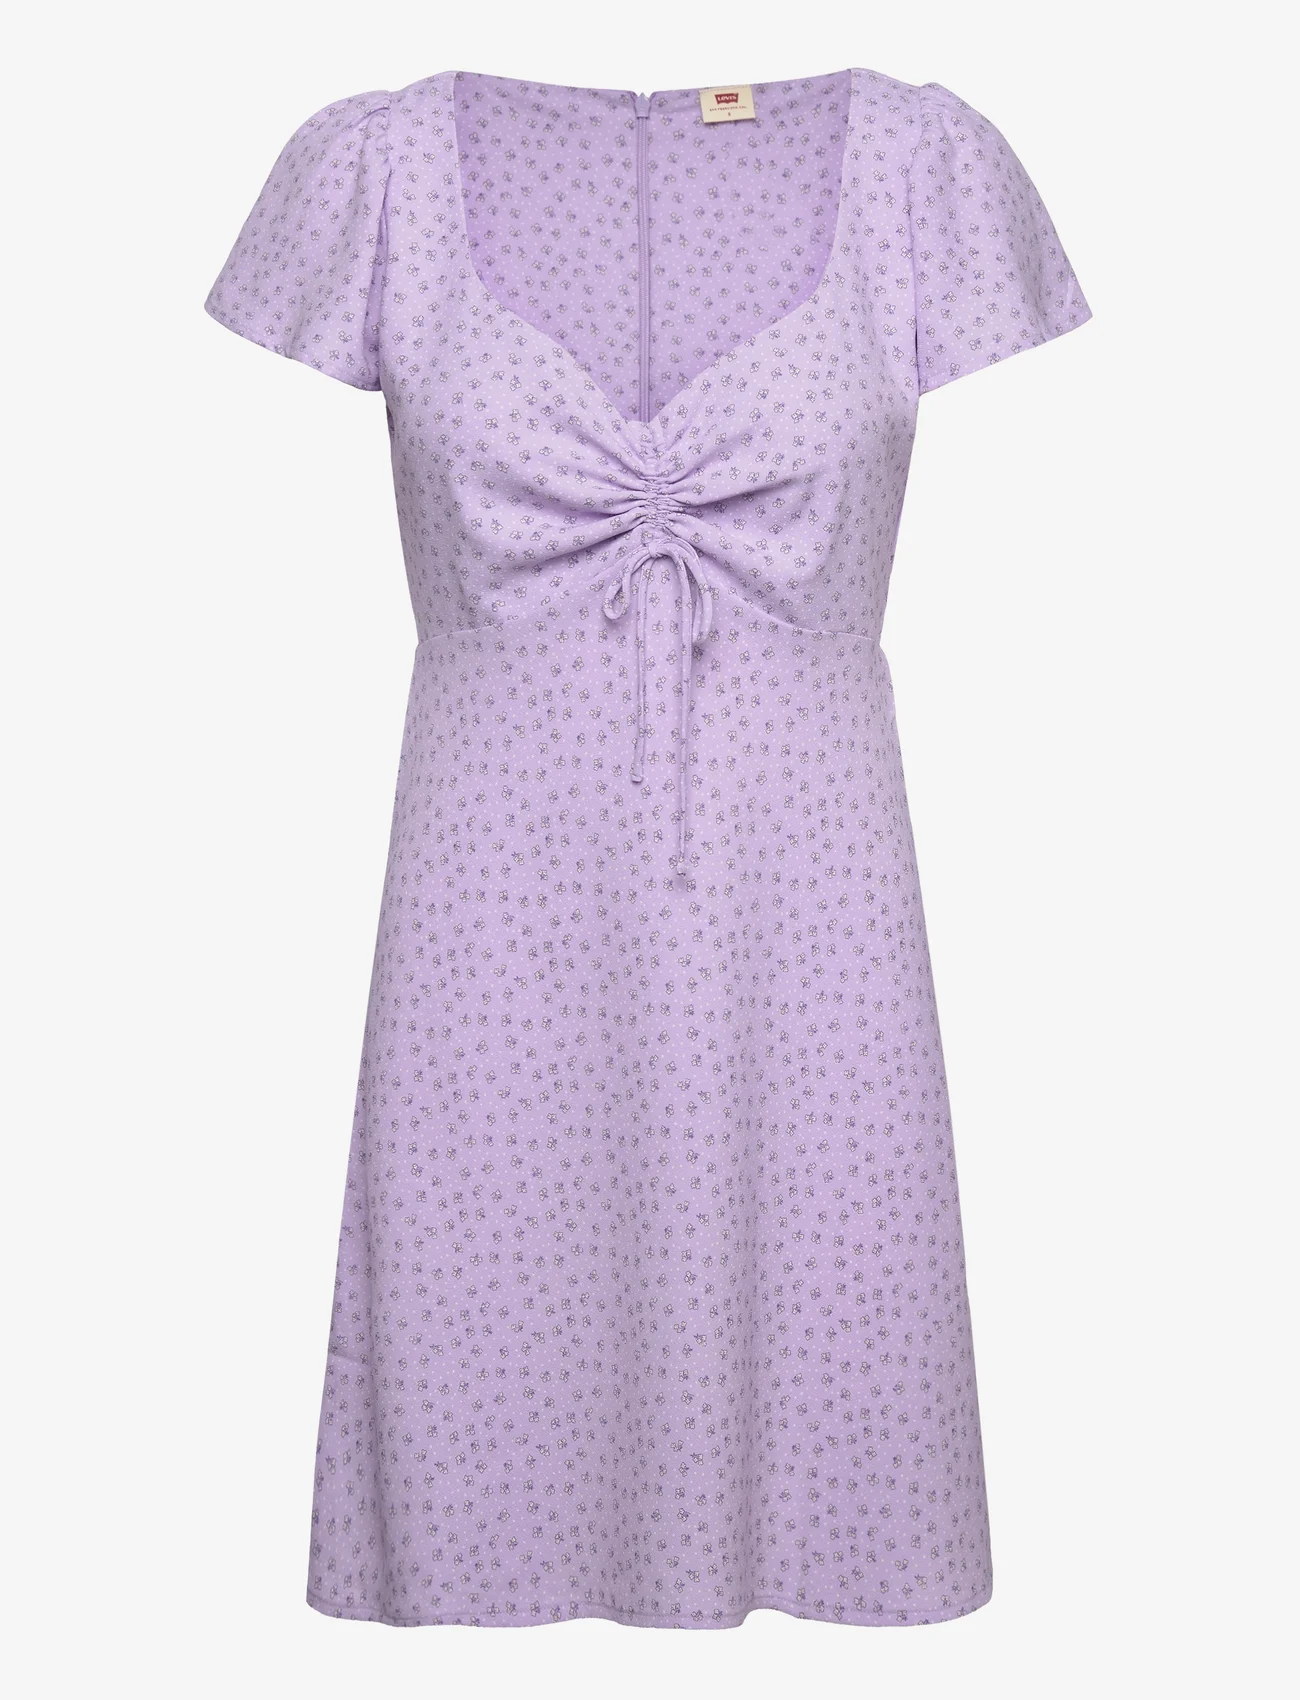 LEVI´S Women - SKYLAR FLUTTER SLV DRESS JANE - summer dresses - purples - 0